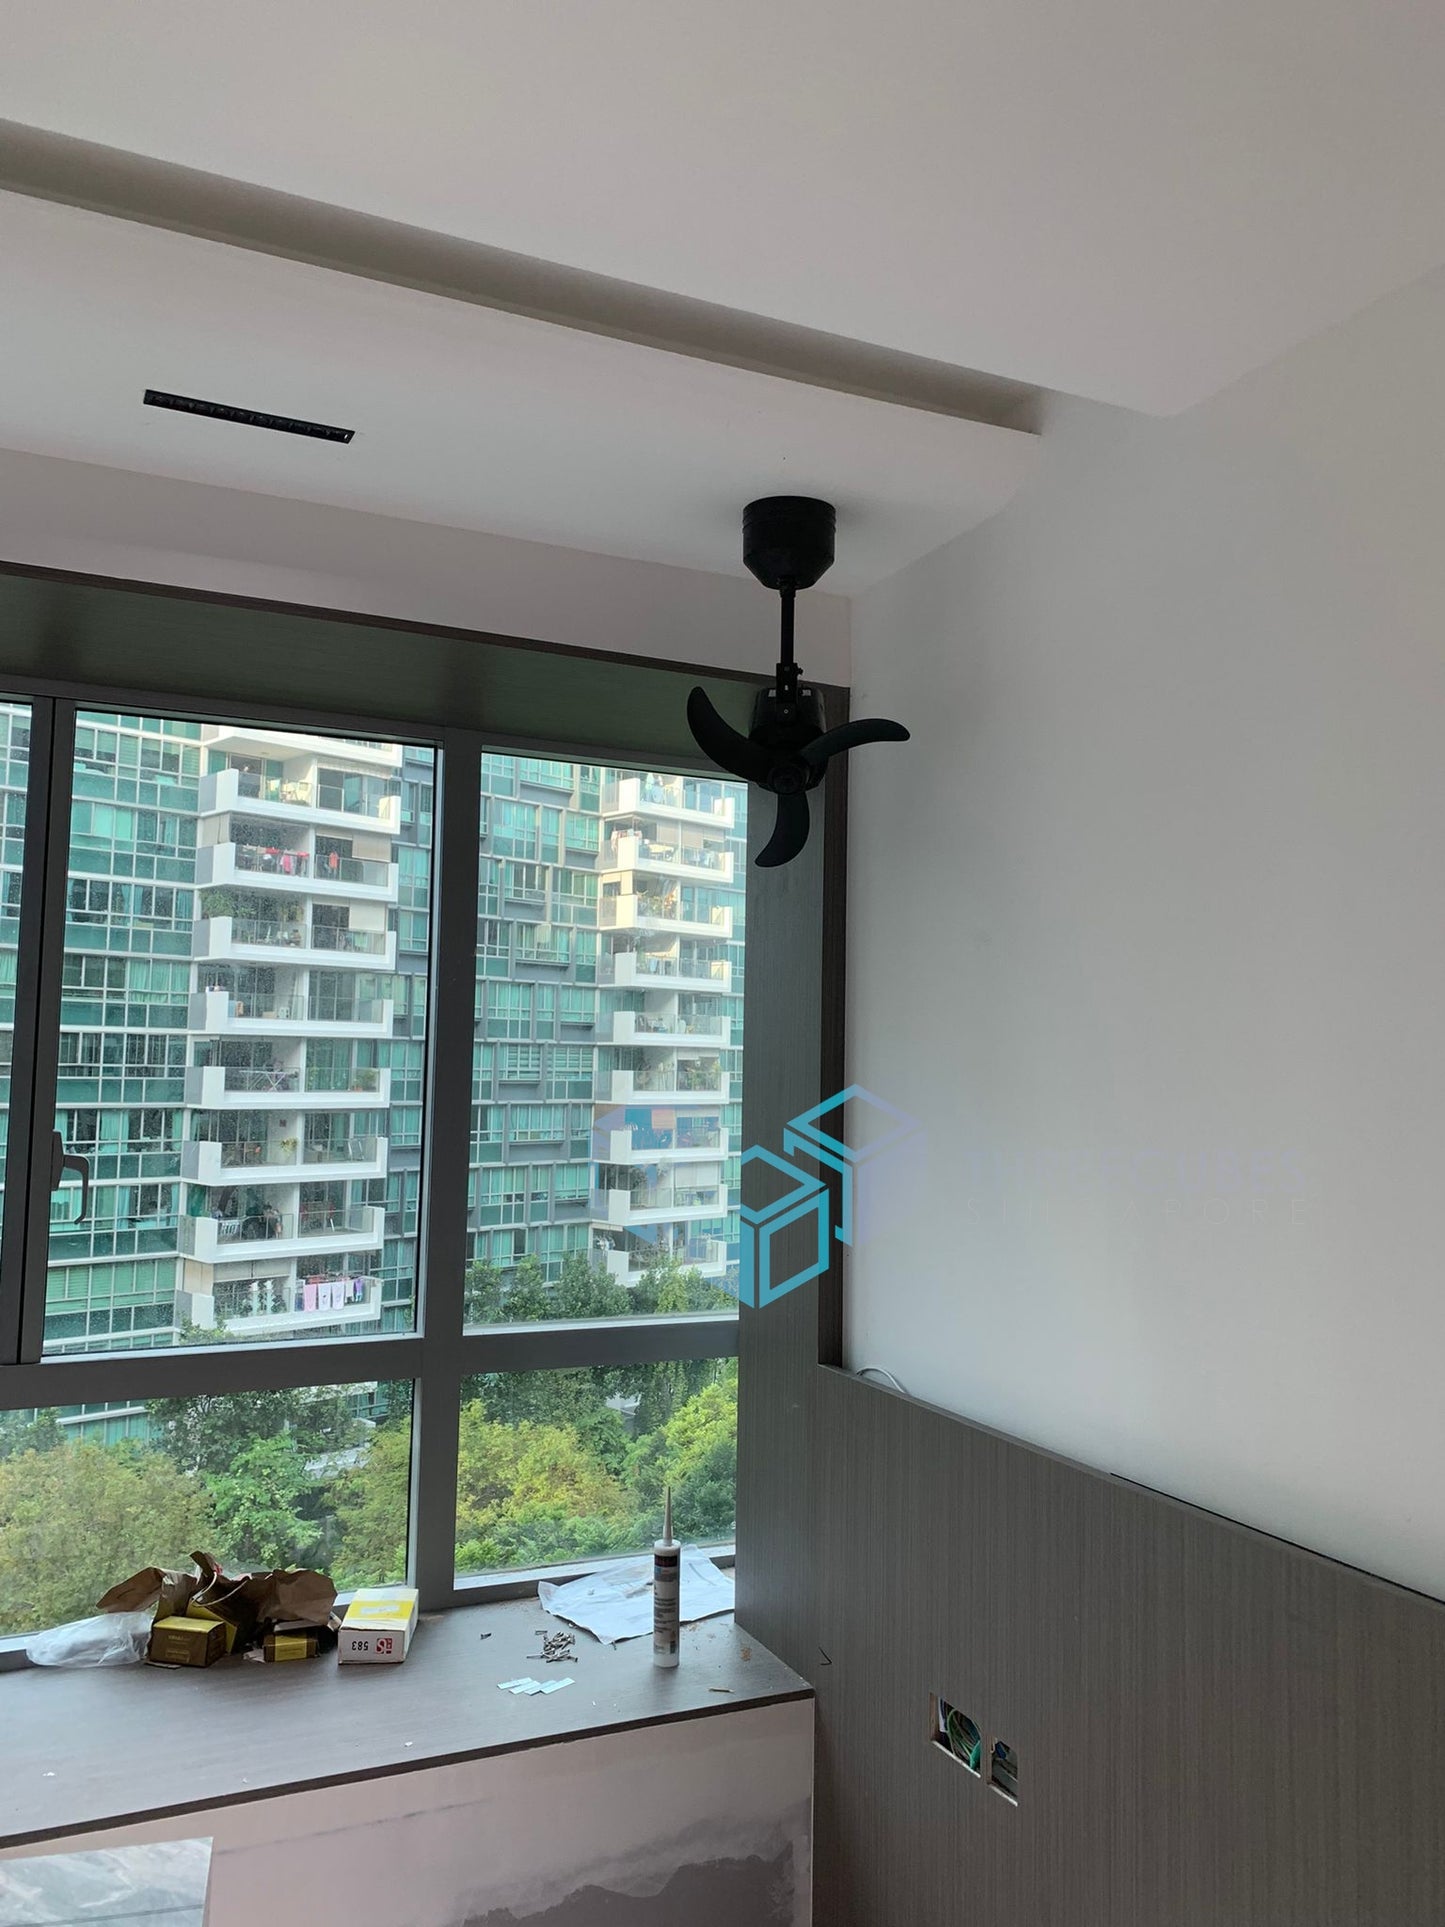 MÖWE –16″ Smart Corner Ceiling Fan (Wifi)